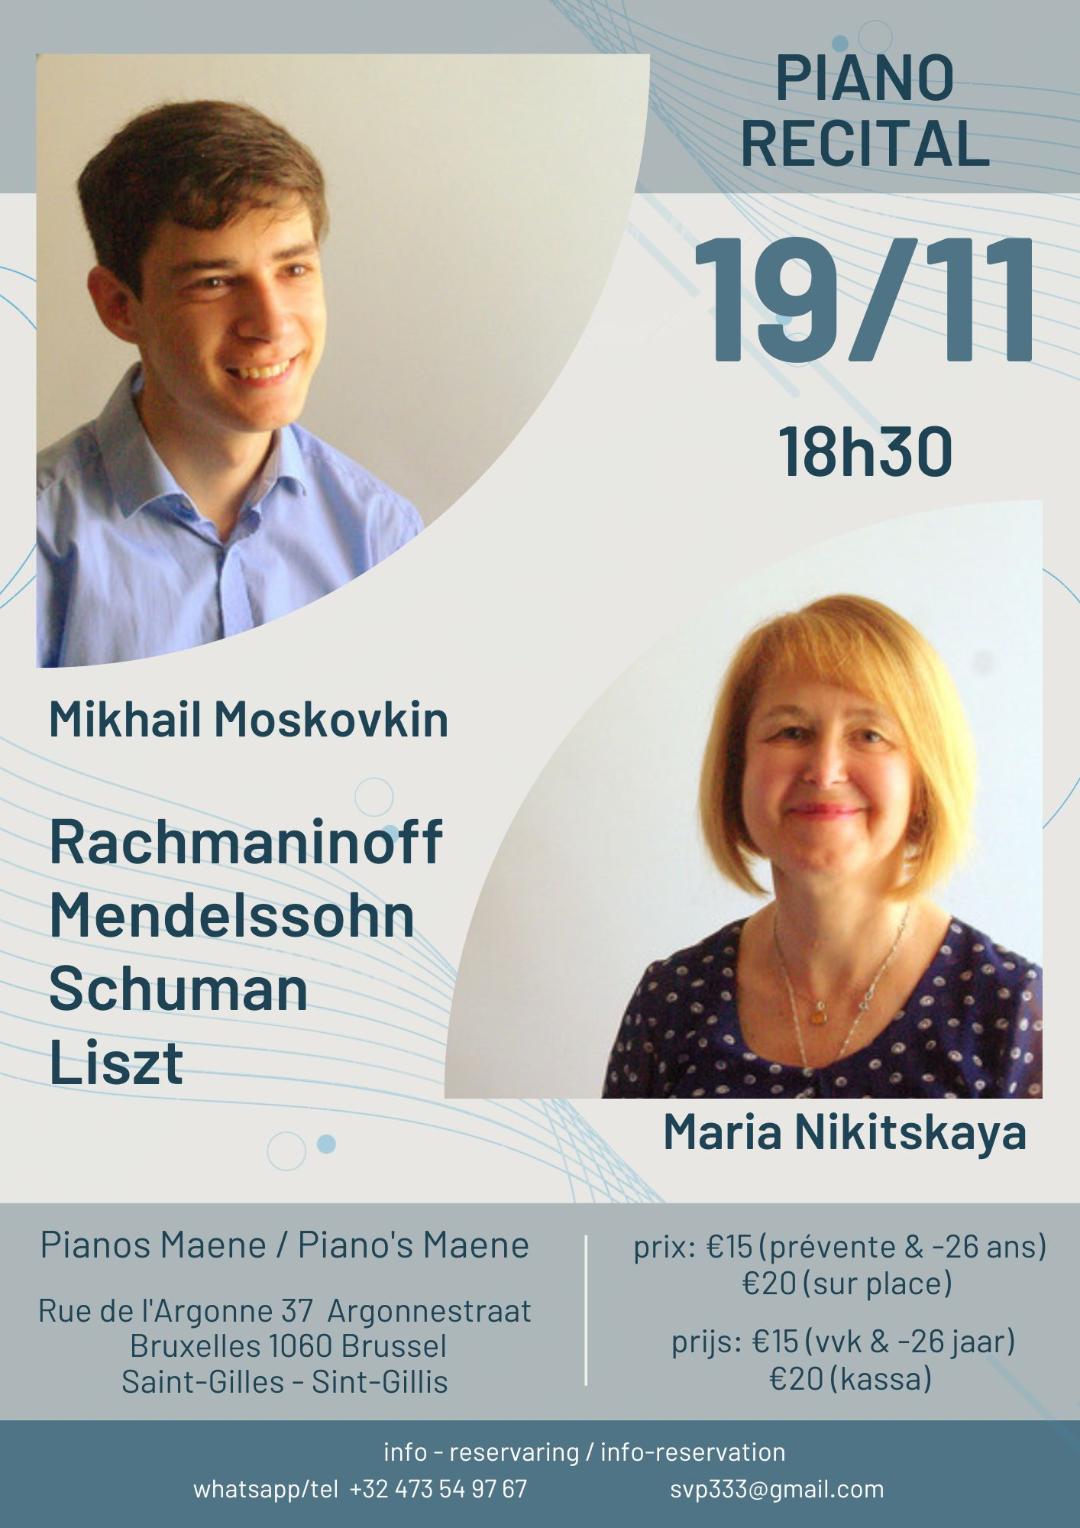 Récital piano de Mikhaïl Moskovkin et Maria Nikitskaya.